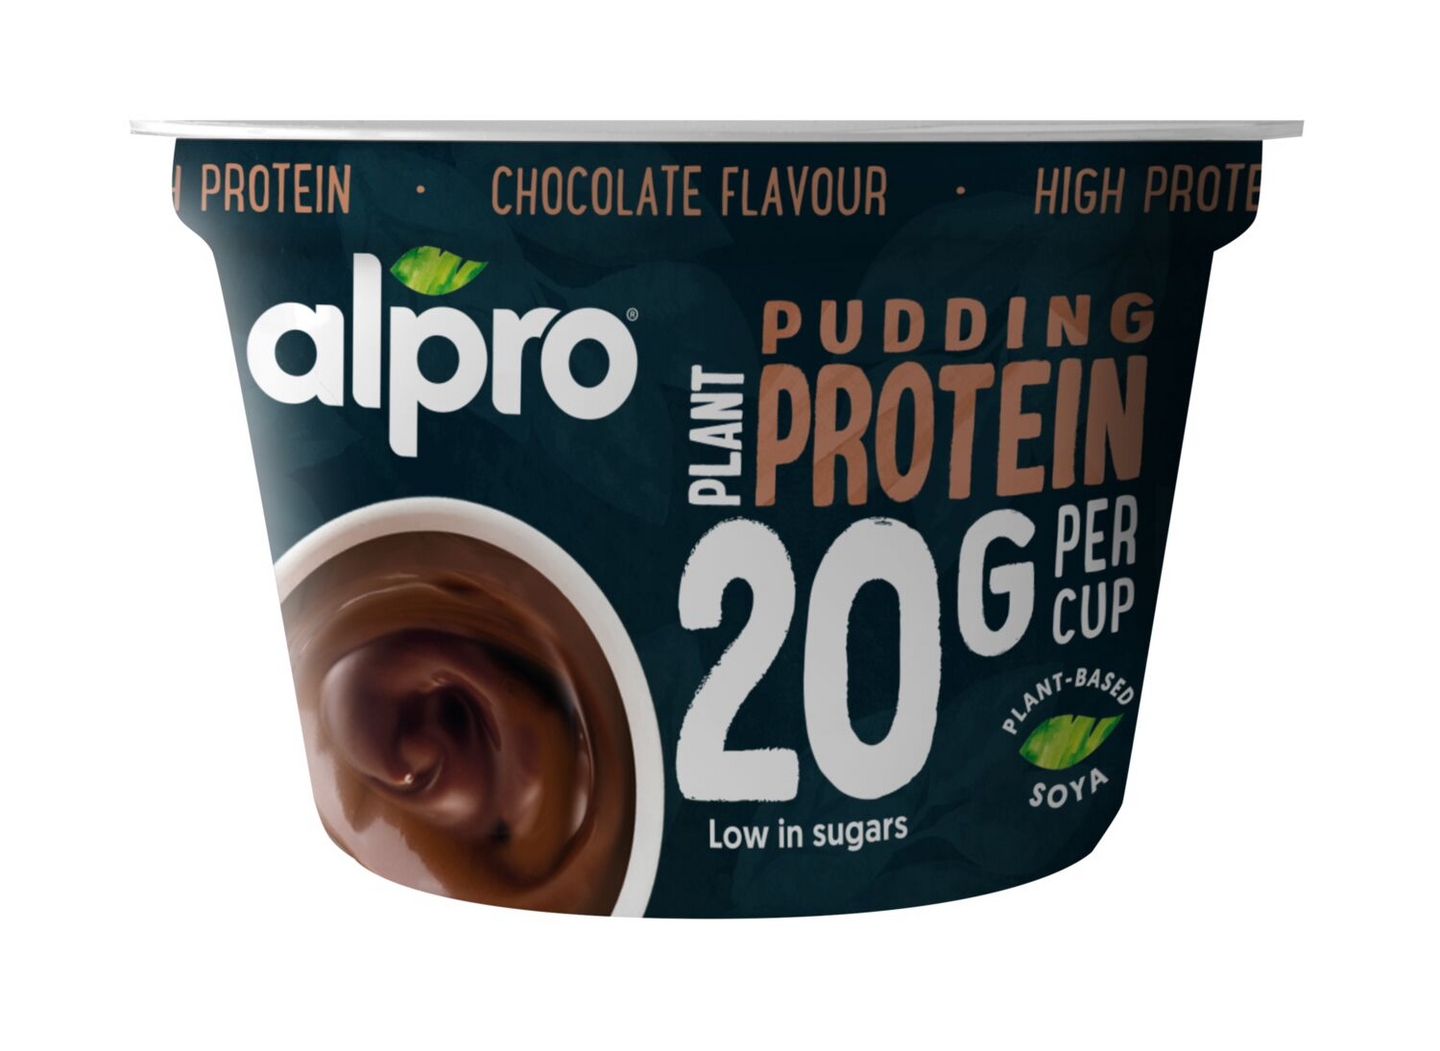 Alpro Protein proteiinivanukas 200g suklaa